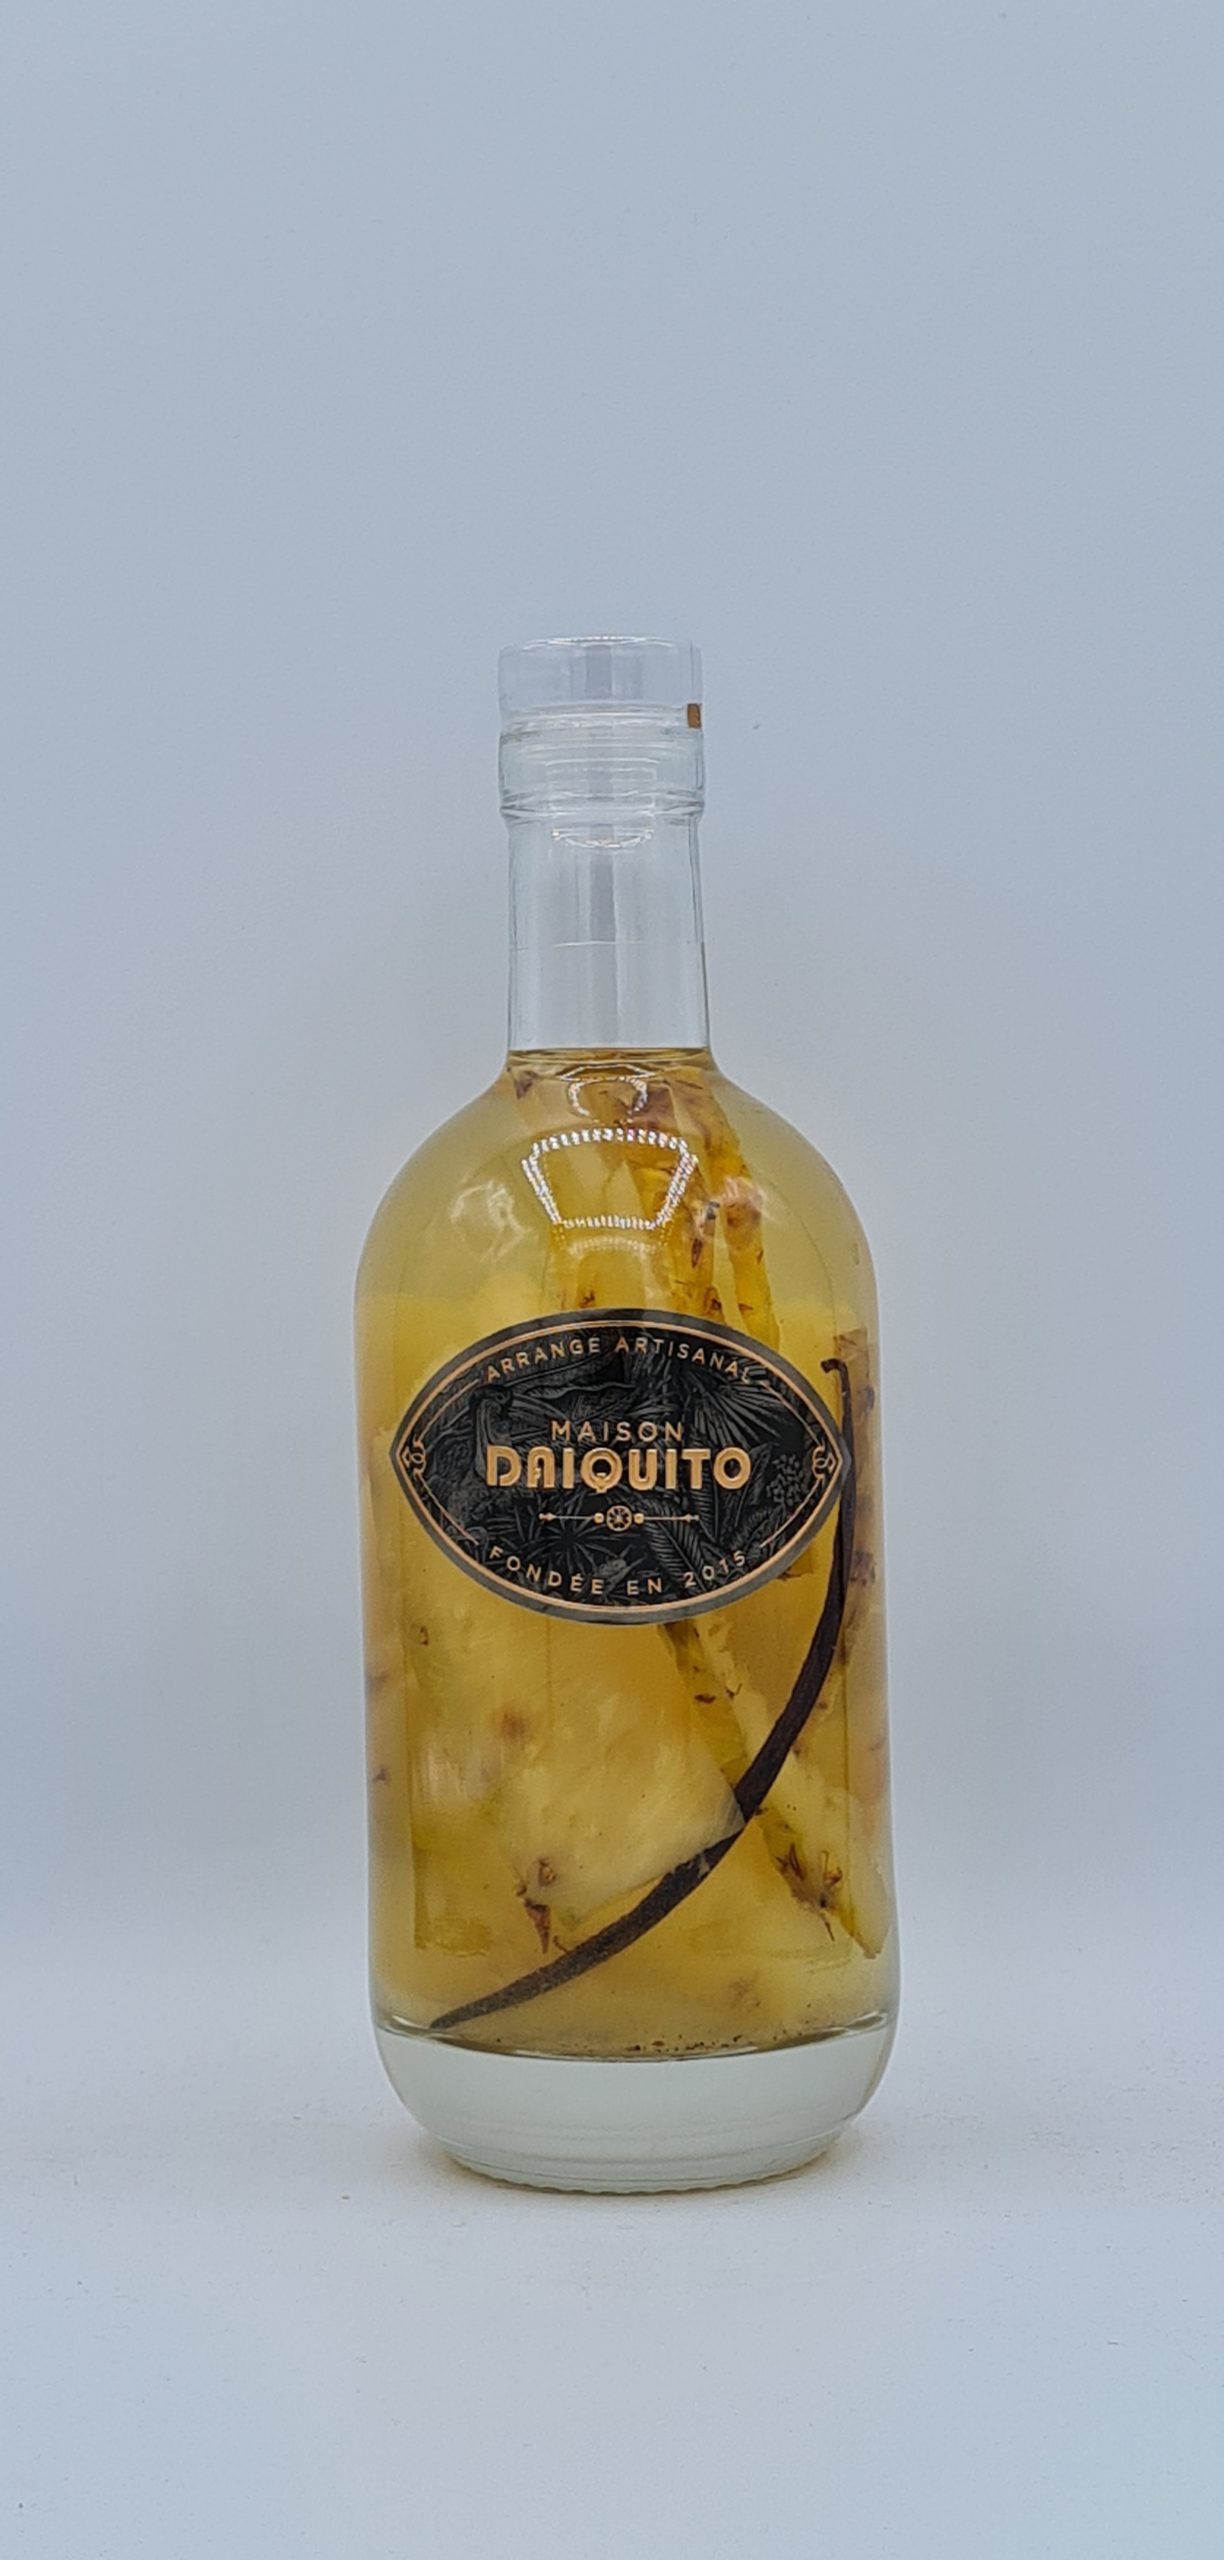 Arrangé Trio Ananas 30% Maison Daiquito